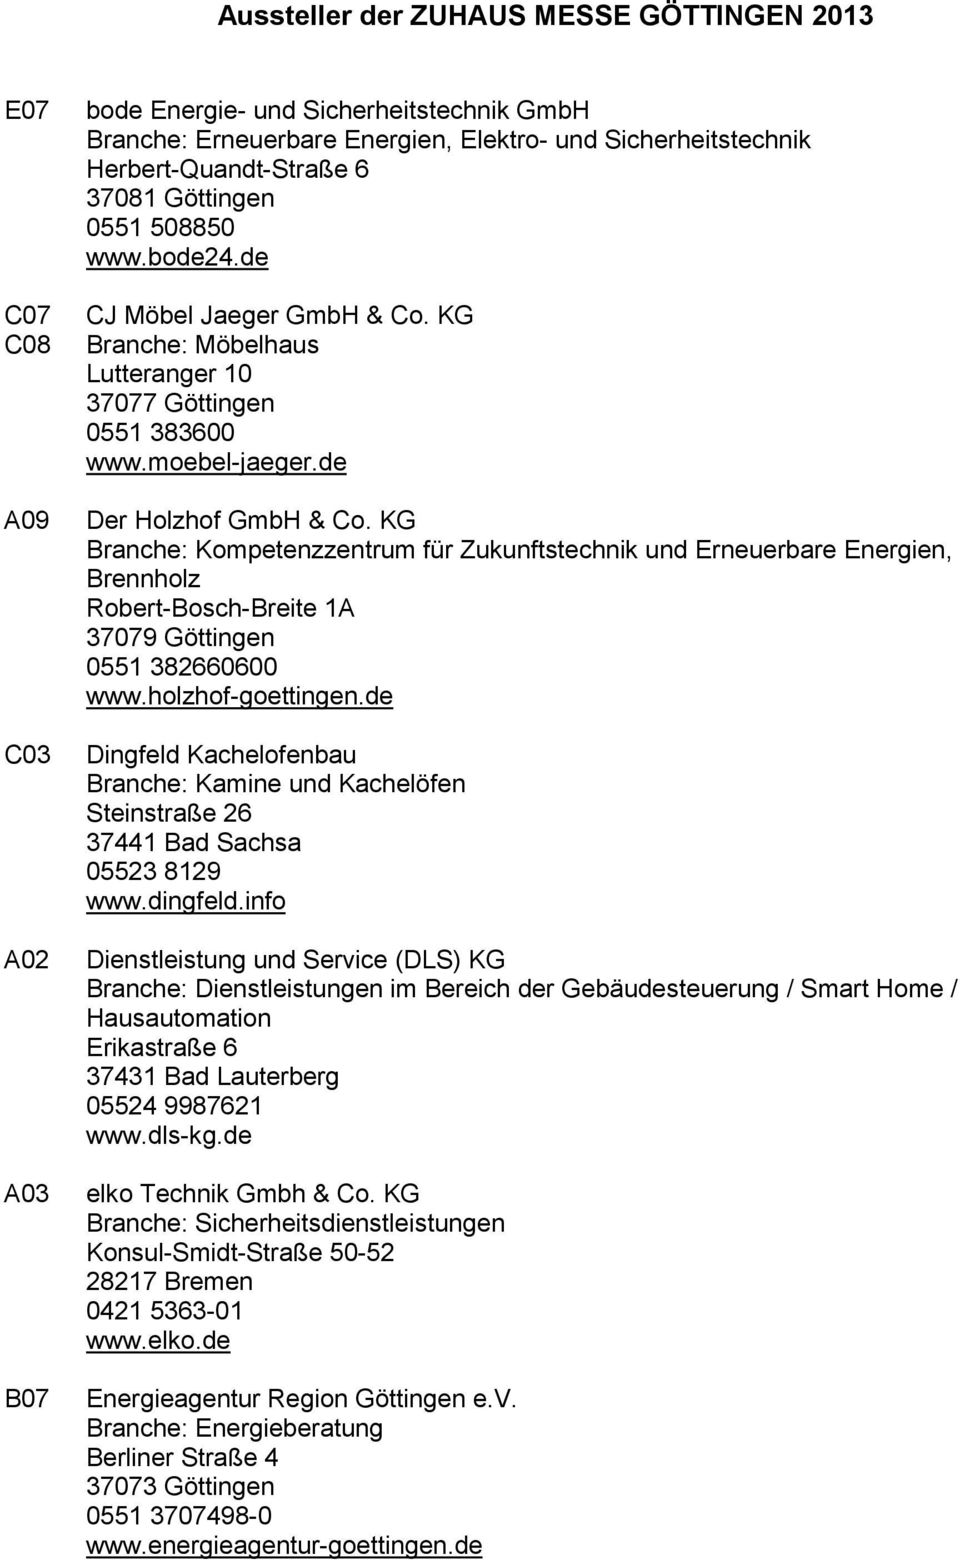 KG Branche: Kompetenzzentrum für Zukunftstechnik und Erneuerbare Energien, Brennholz Robert-Bosch-Breite 1A 0551 382660600 www.holzhof-goettingen.